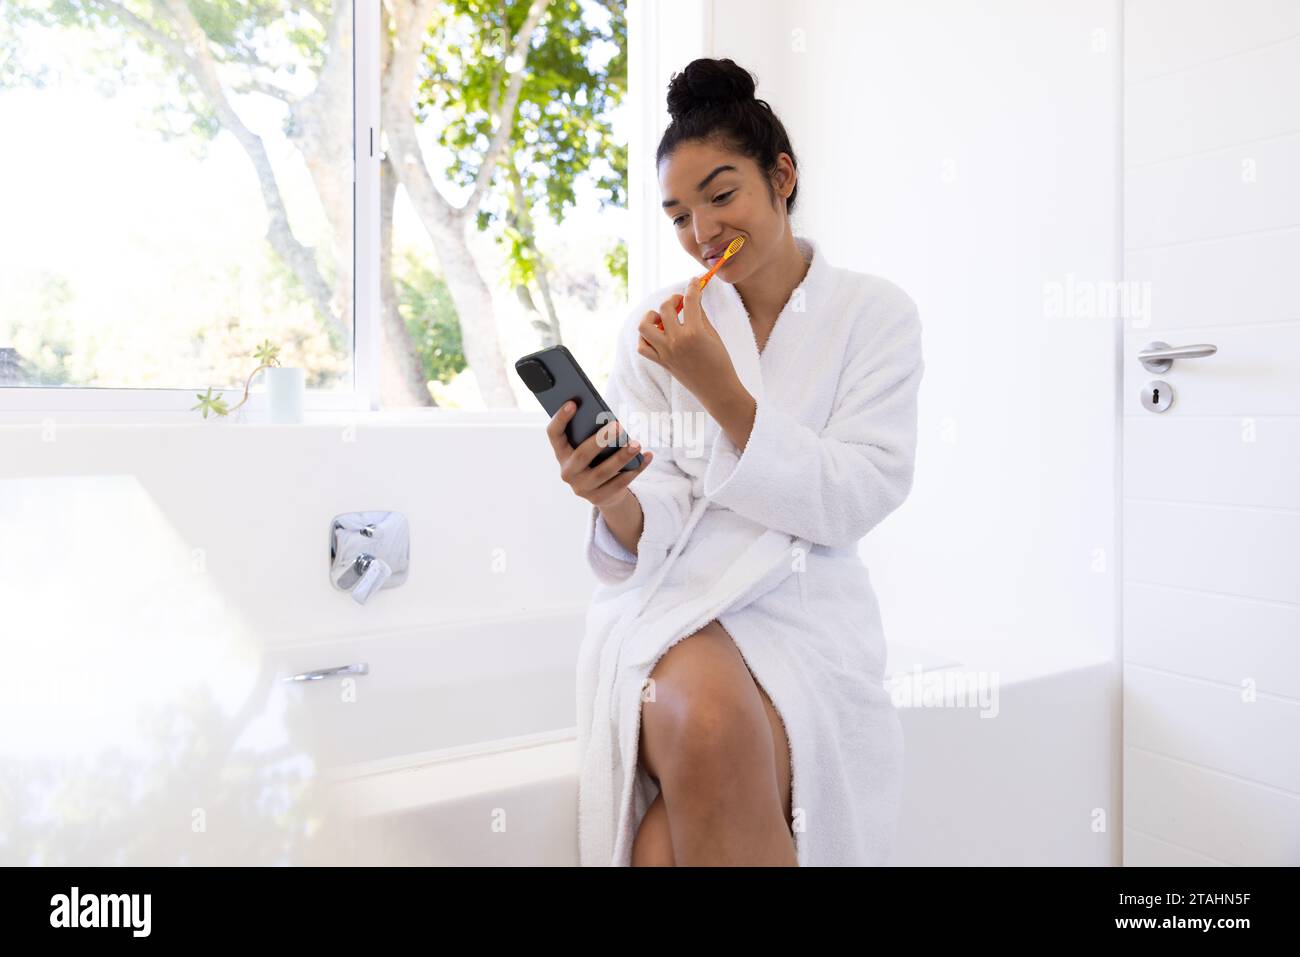 Birassische Frau im Bademantel, die Zähne putzt und Smartphone im sonnigen Bad benutzt. Lebensstil, Selbstpflege, Hygiene, Kommunikation und häusliches Leben, unal Stockfoto